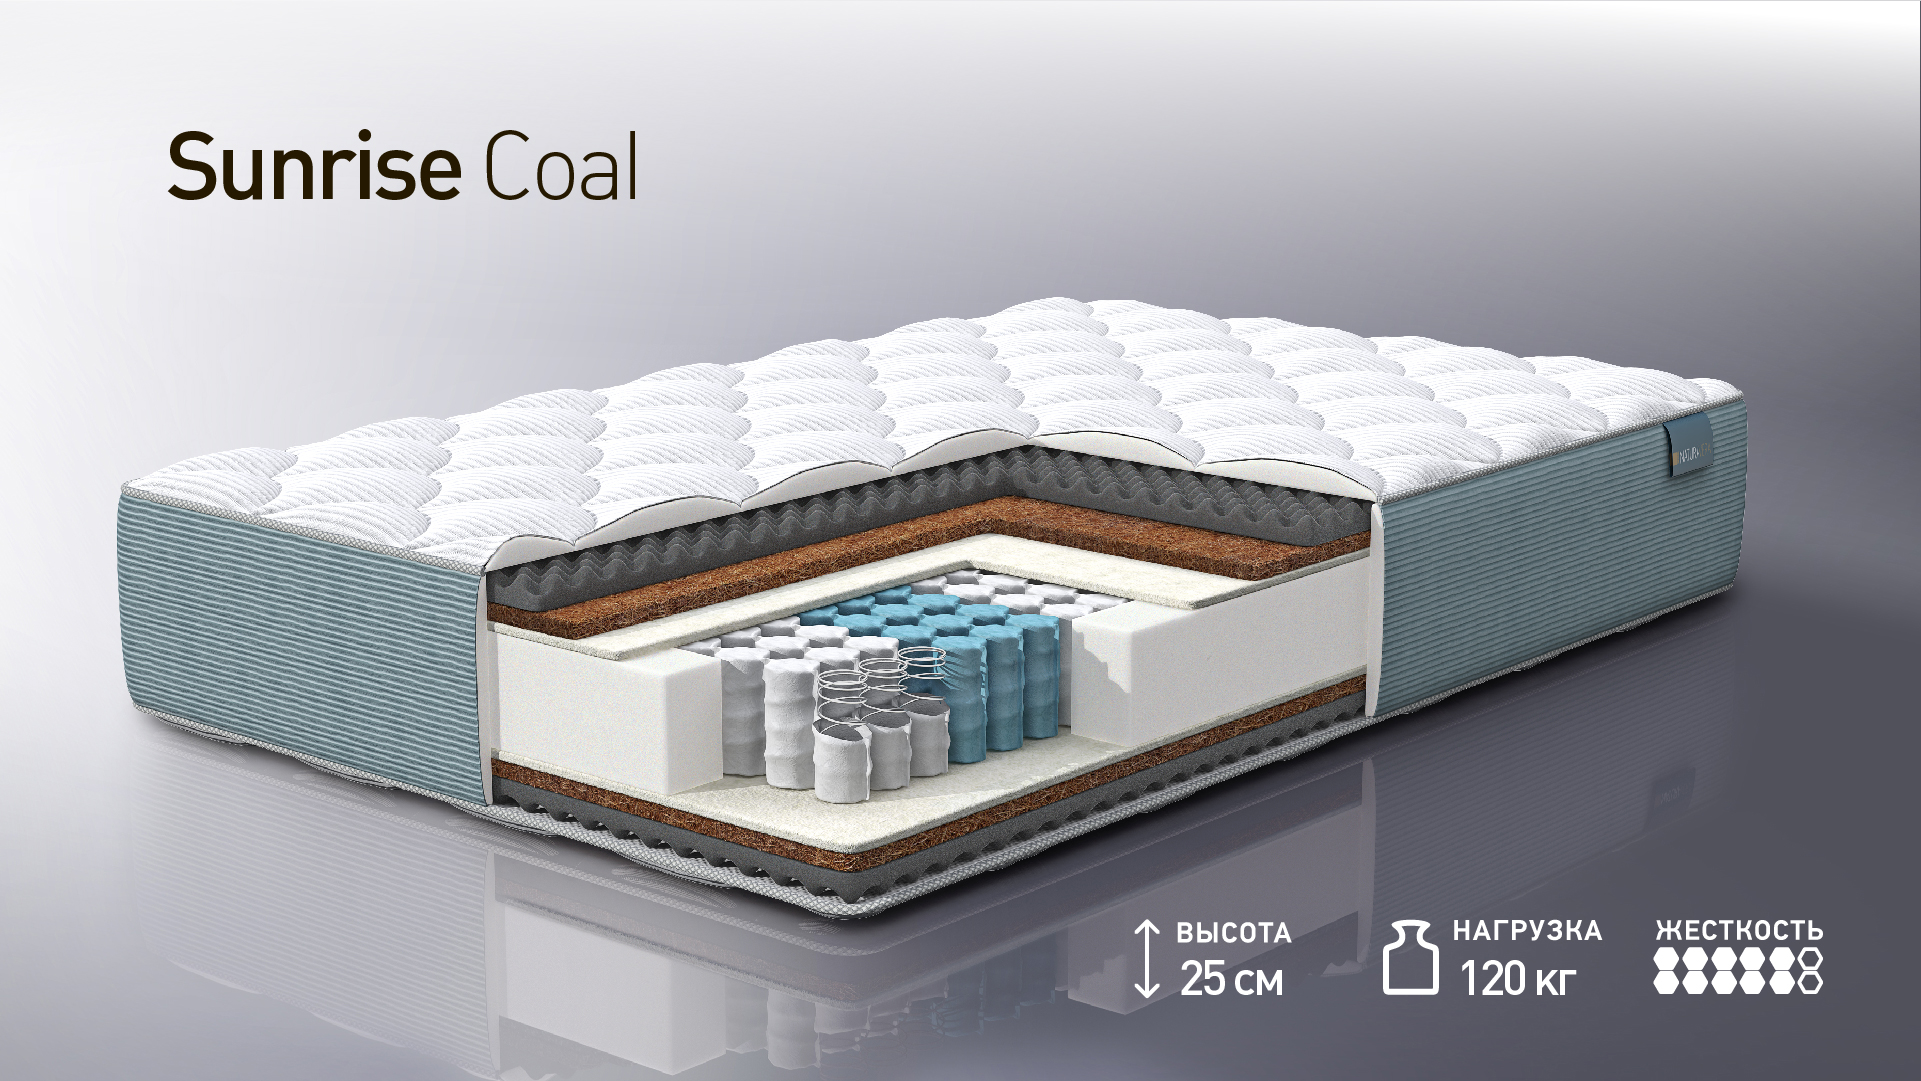 матрас sunrise coal Европейская Мебель: https://www.evromebelnn.ru/